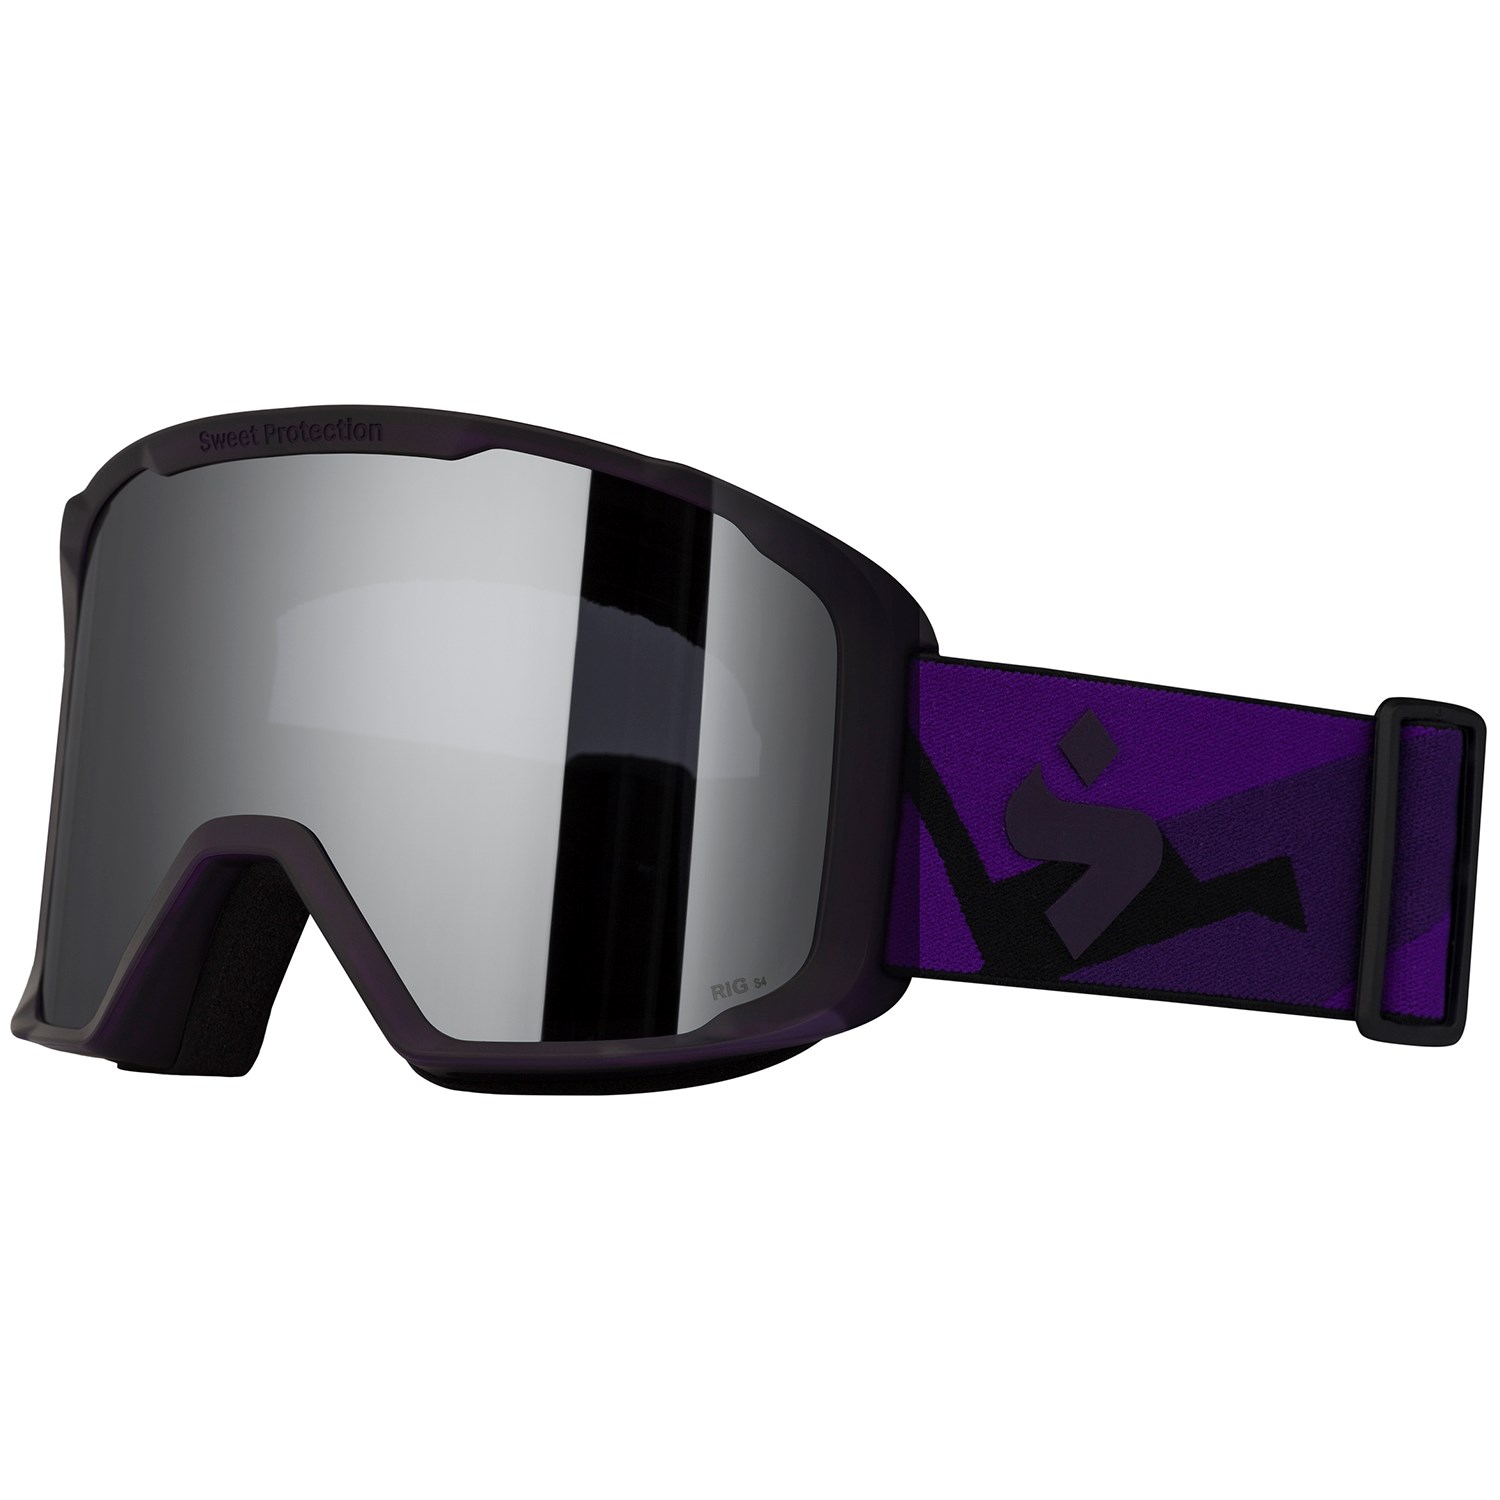 Защитные очки Sweet Protection Durden RIG Reflect, фиолетовый